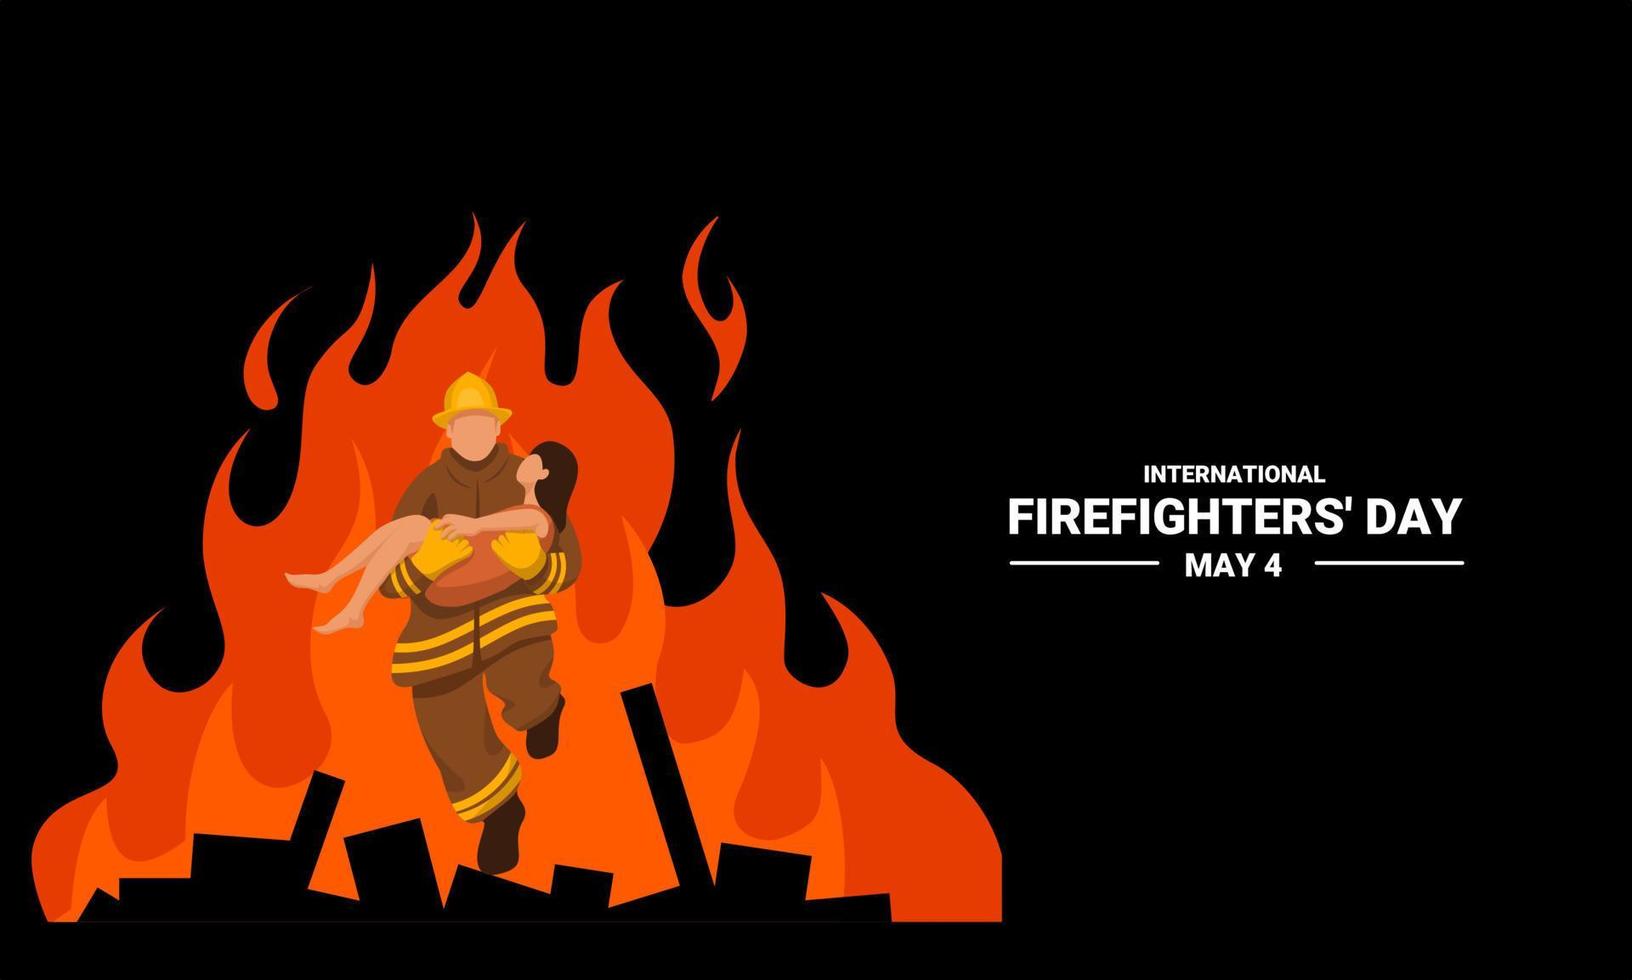 illustrazione vettoriale di un vigile del fuoco che salva una bambina, come banner, poster o modello per la giornata internazionale dei vigili del fuoco.